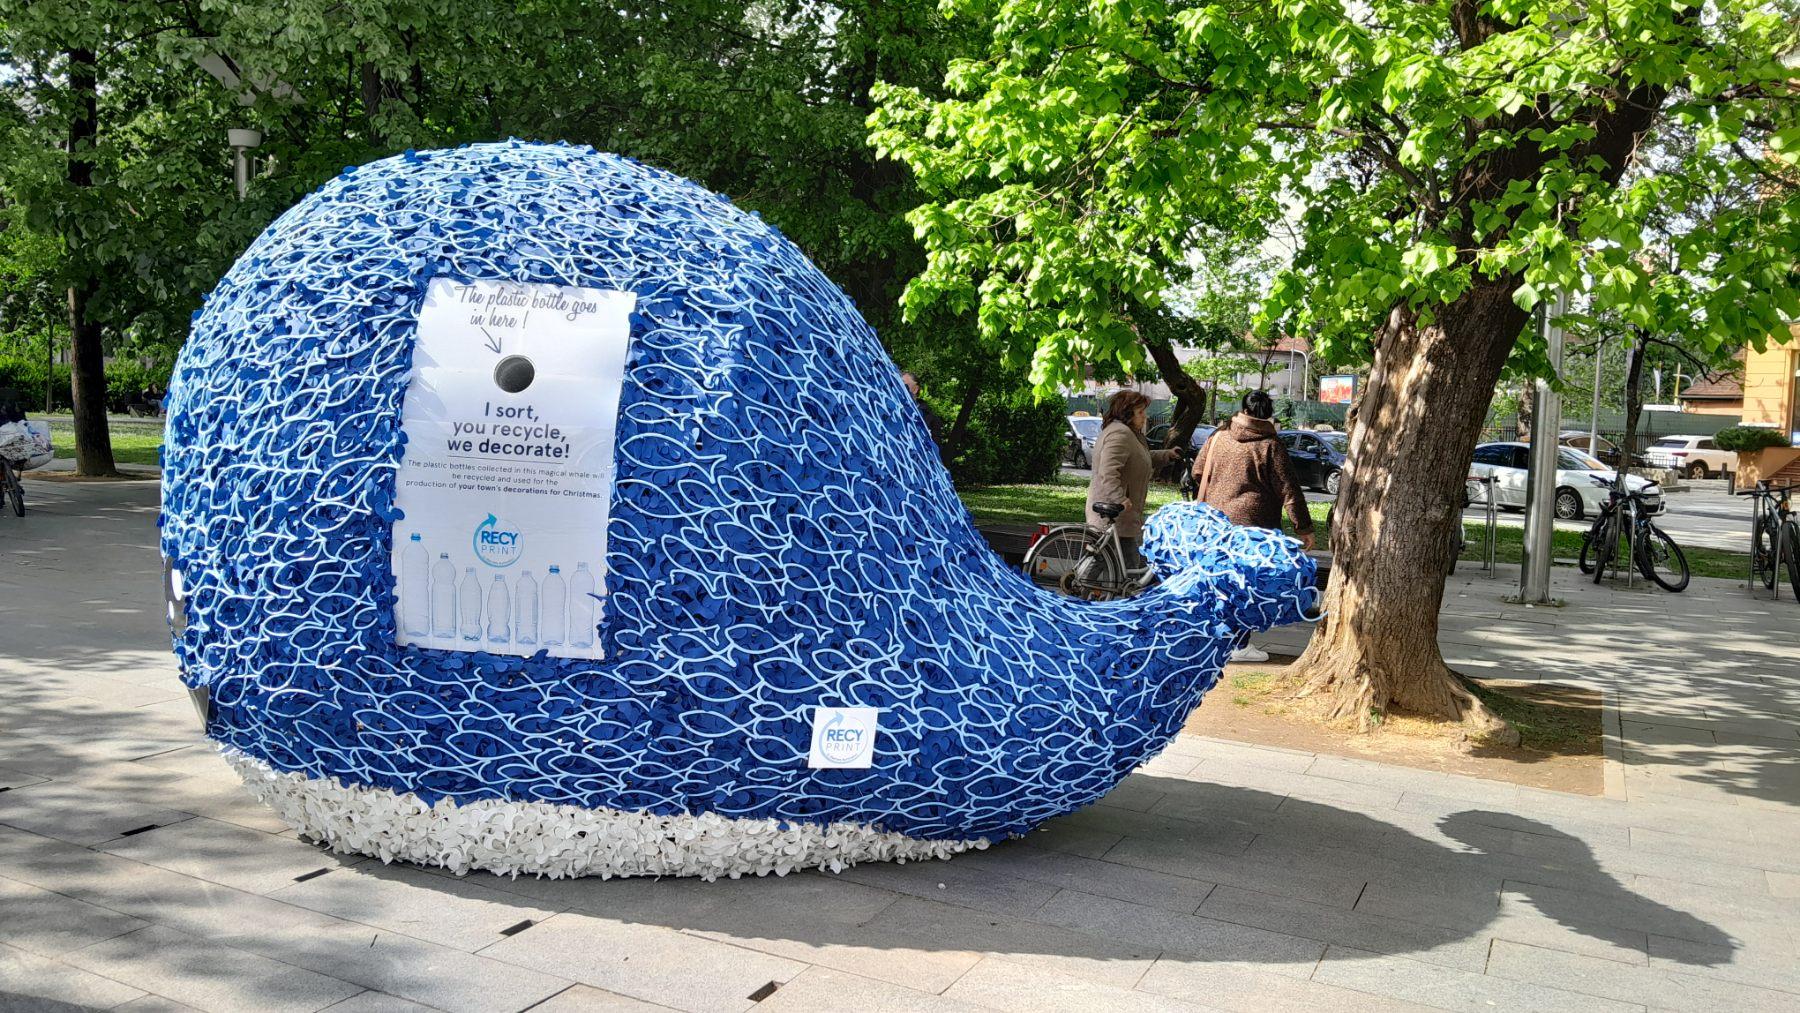 Saznajte za šta služi velika skulptura kita u centru grada (FOTO)